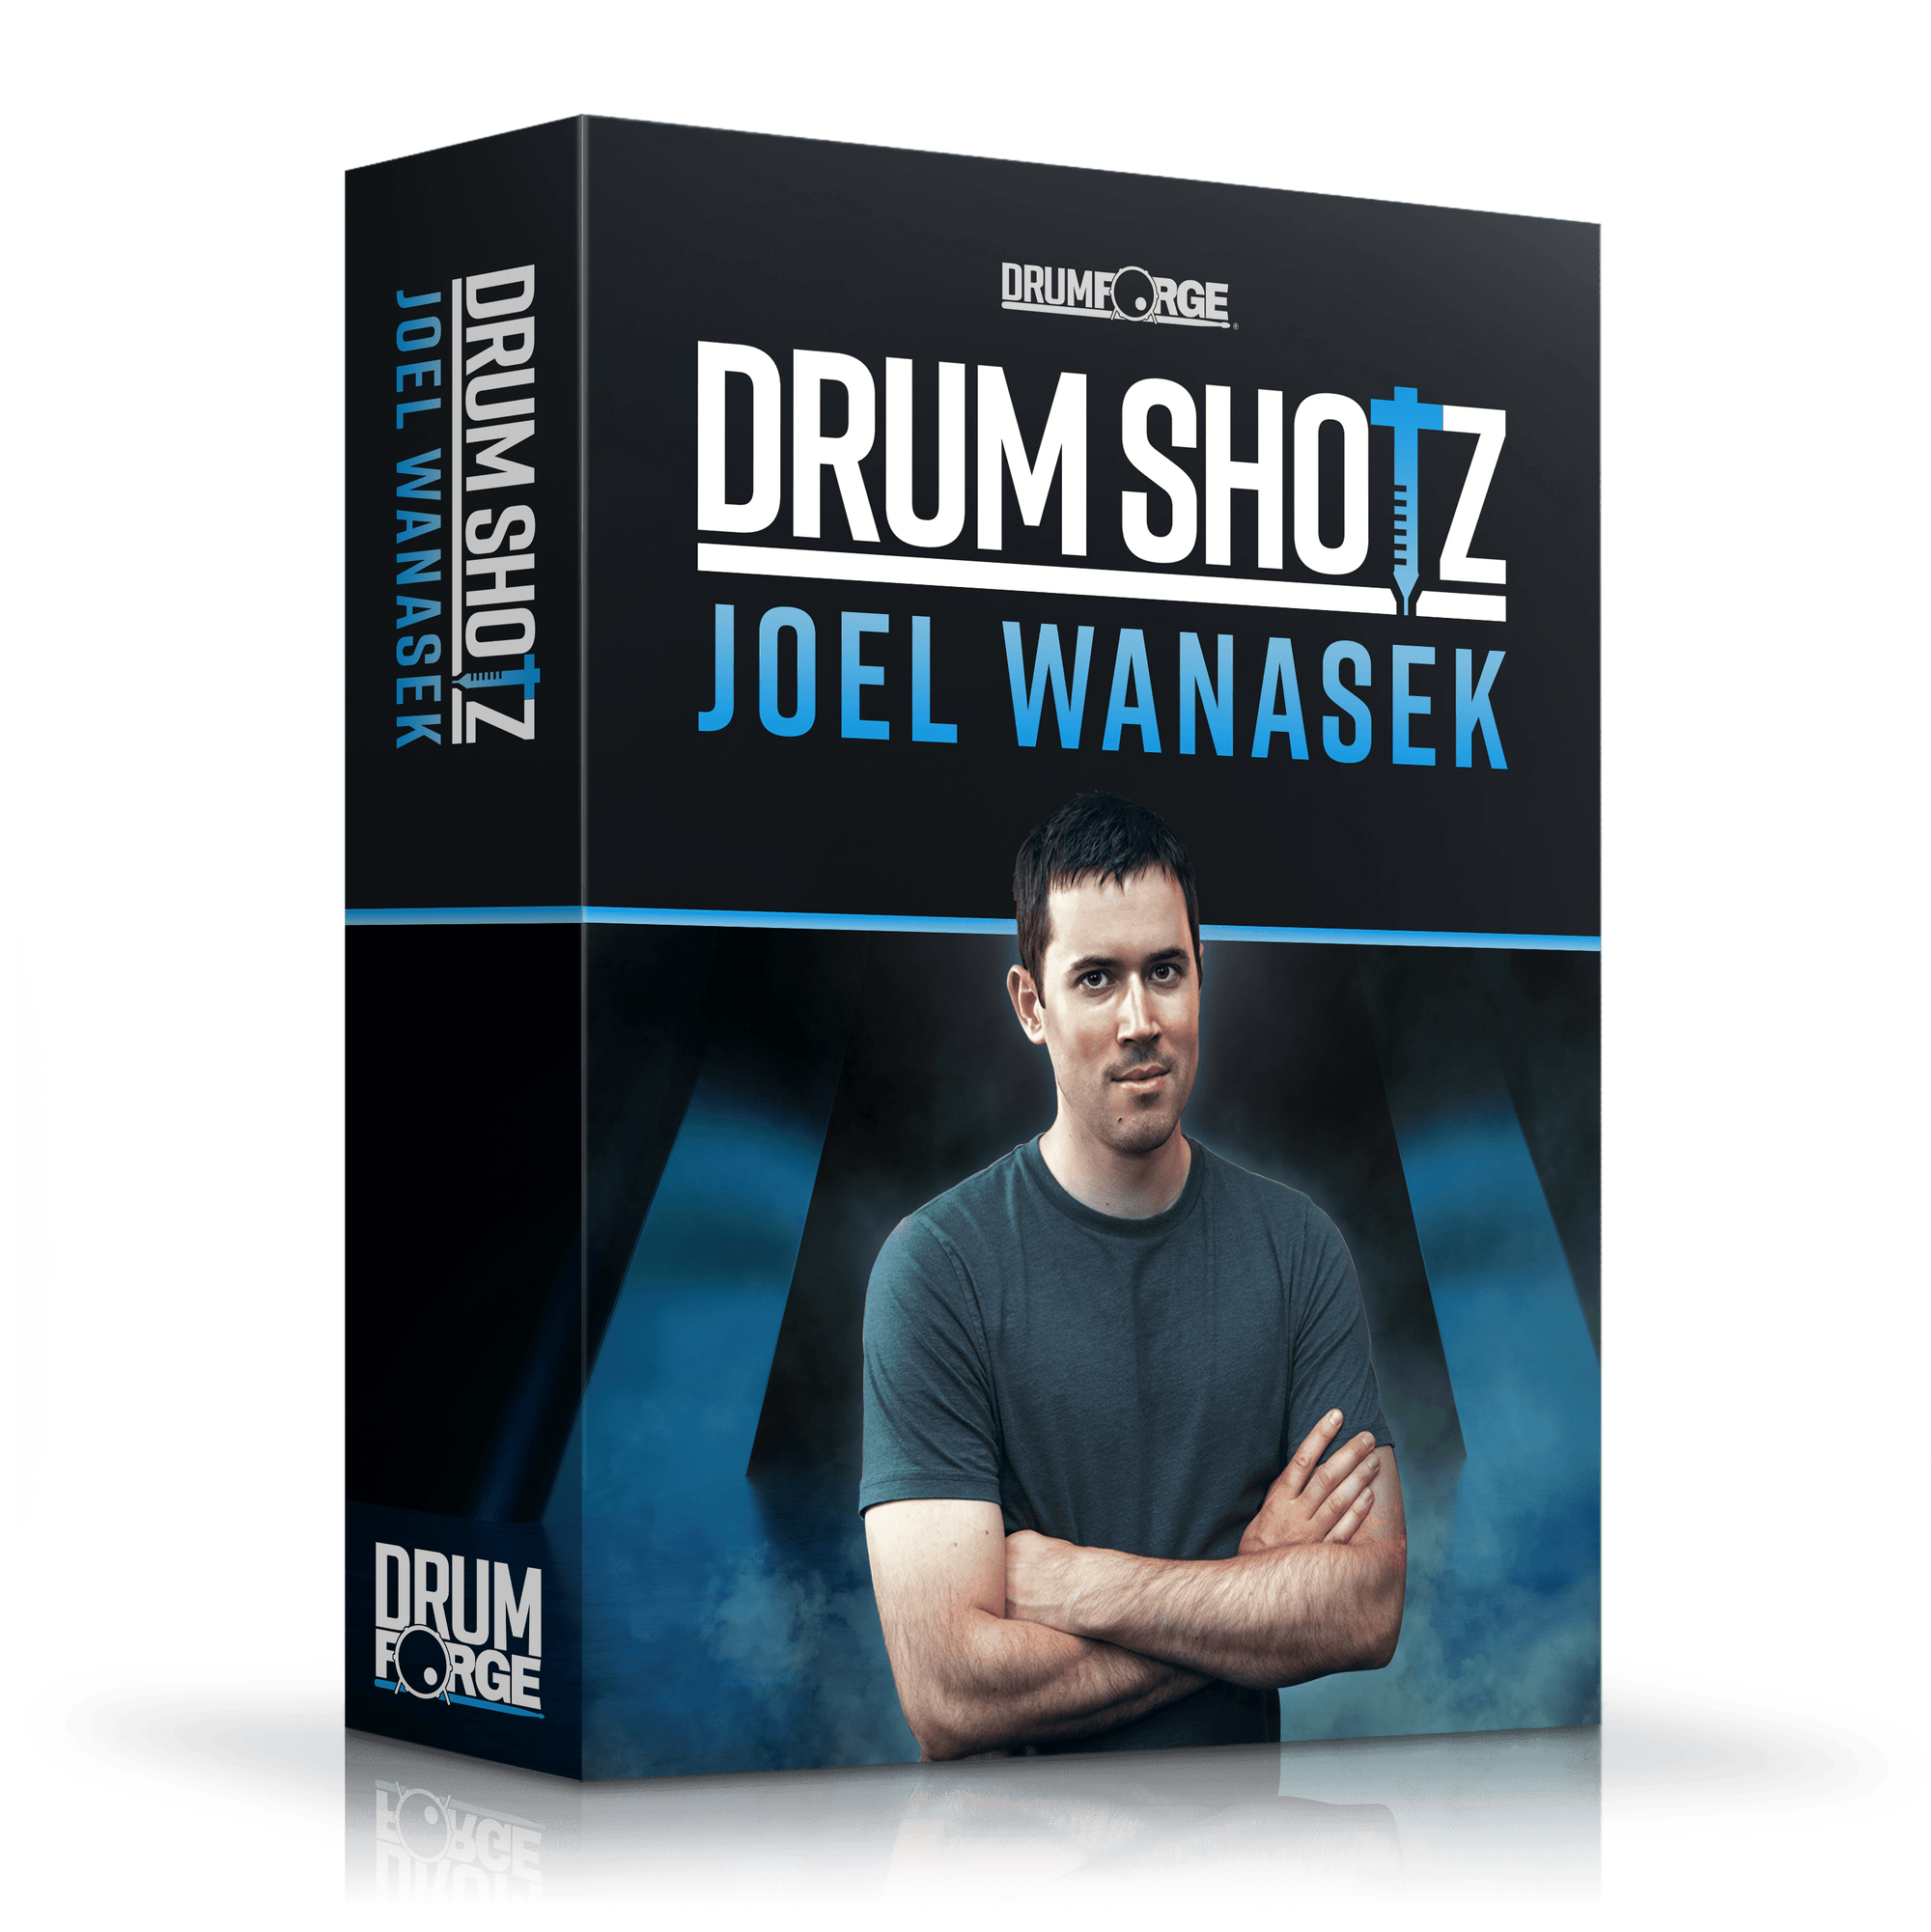 Drumshotz Joel Wanasek